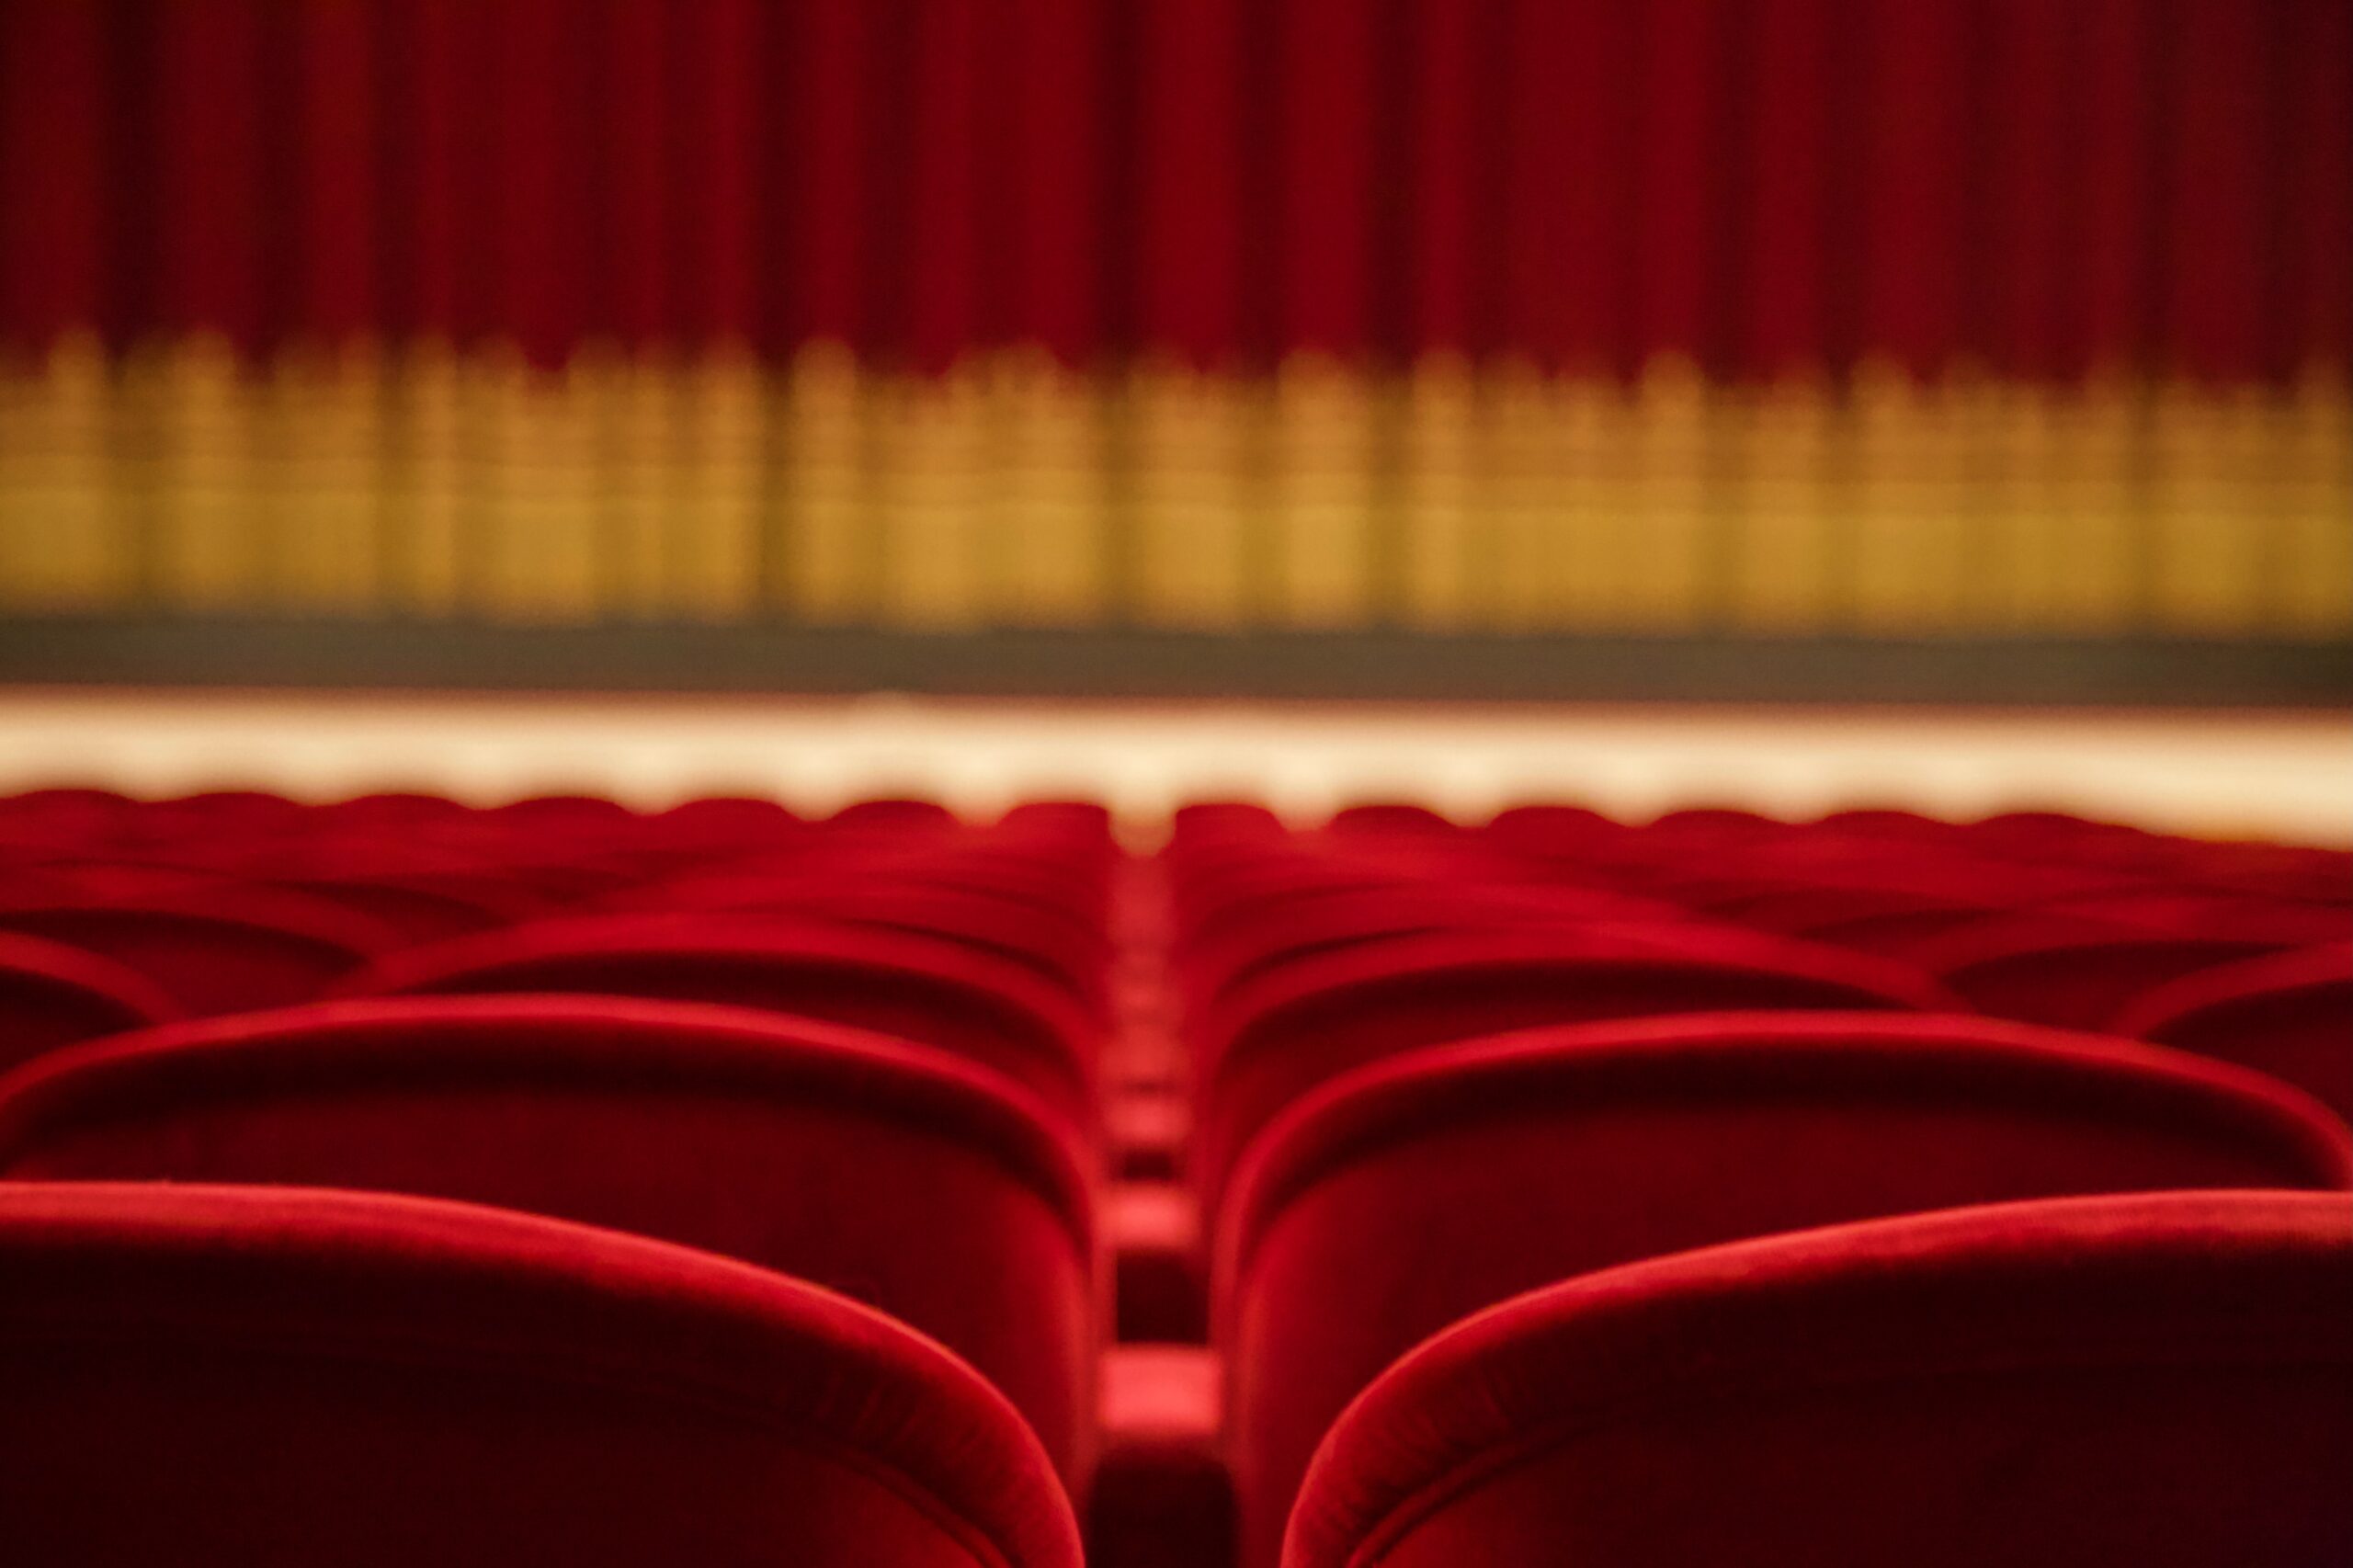 "Il governo intervenga sul caro bollette di teatri e cinema", l'appello di Forte (Stage Entertainment)